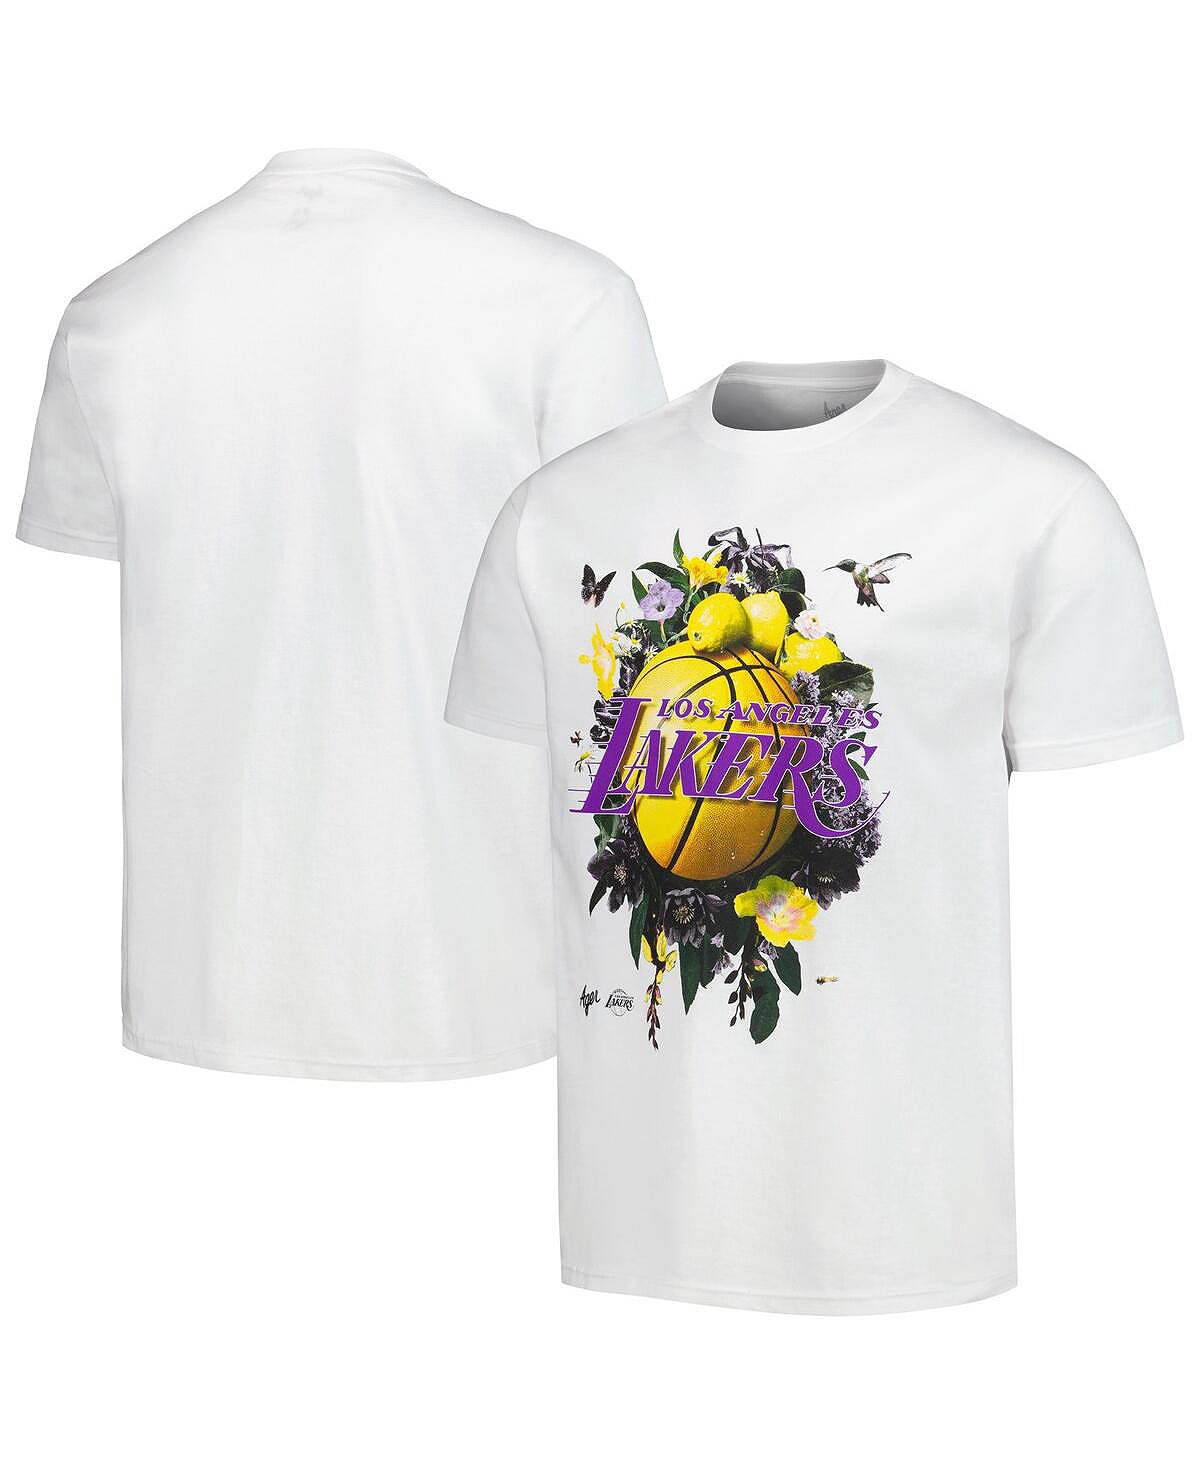 Мужская и женская белая футболка Los Angeles Lakers с надписью Artist Series NBA Exclusive Collection инопланетное вторжение битва за лос анджелес dvd